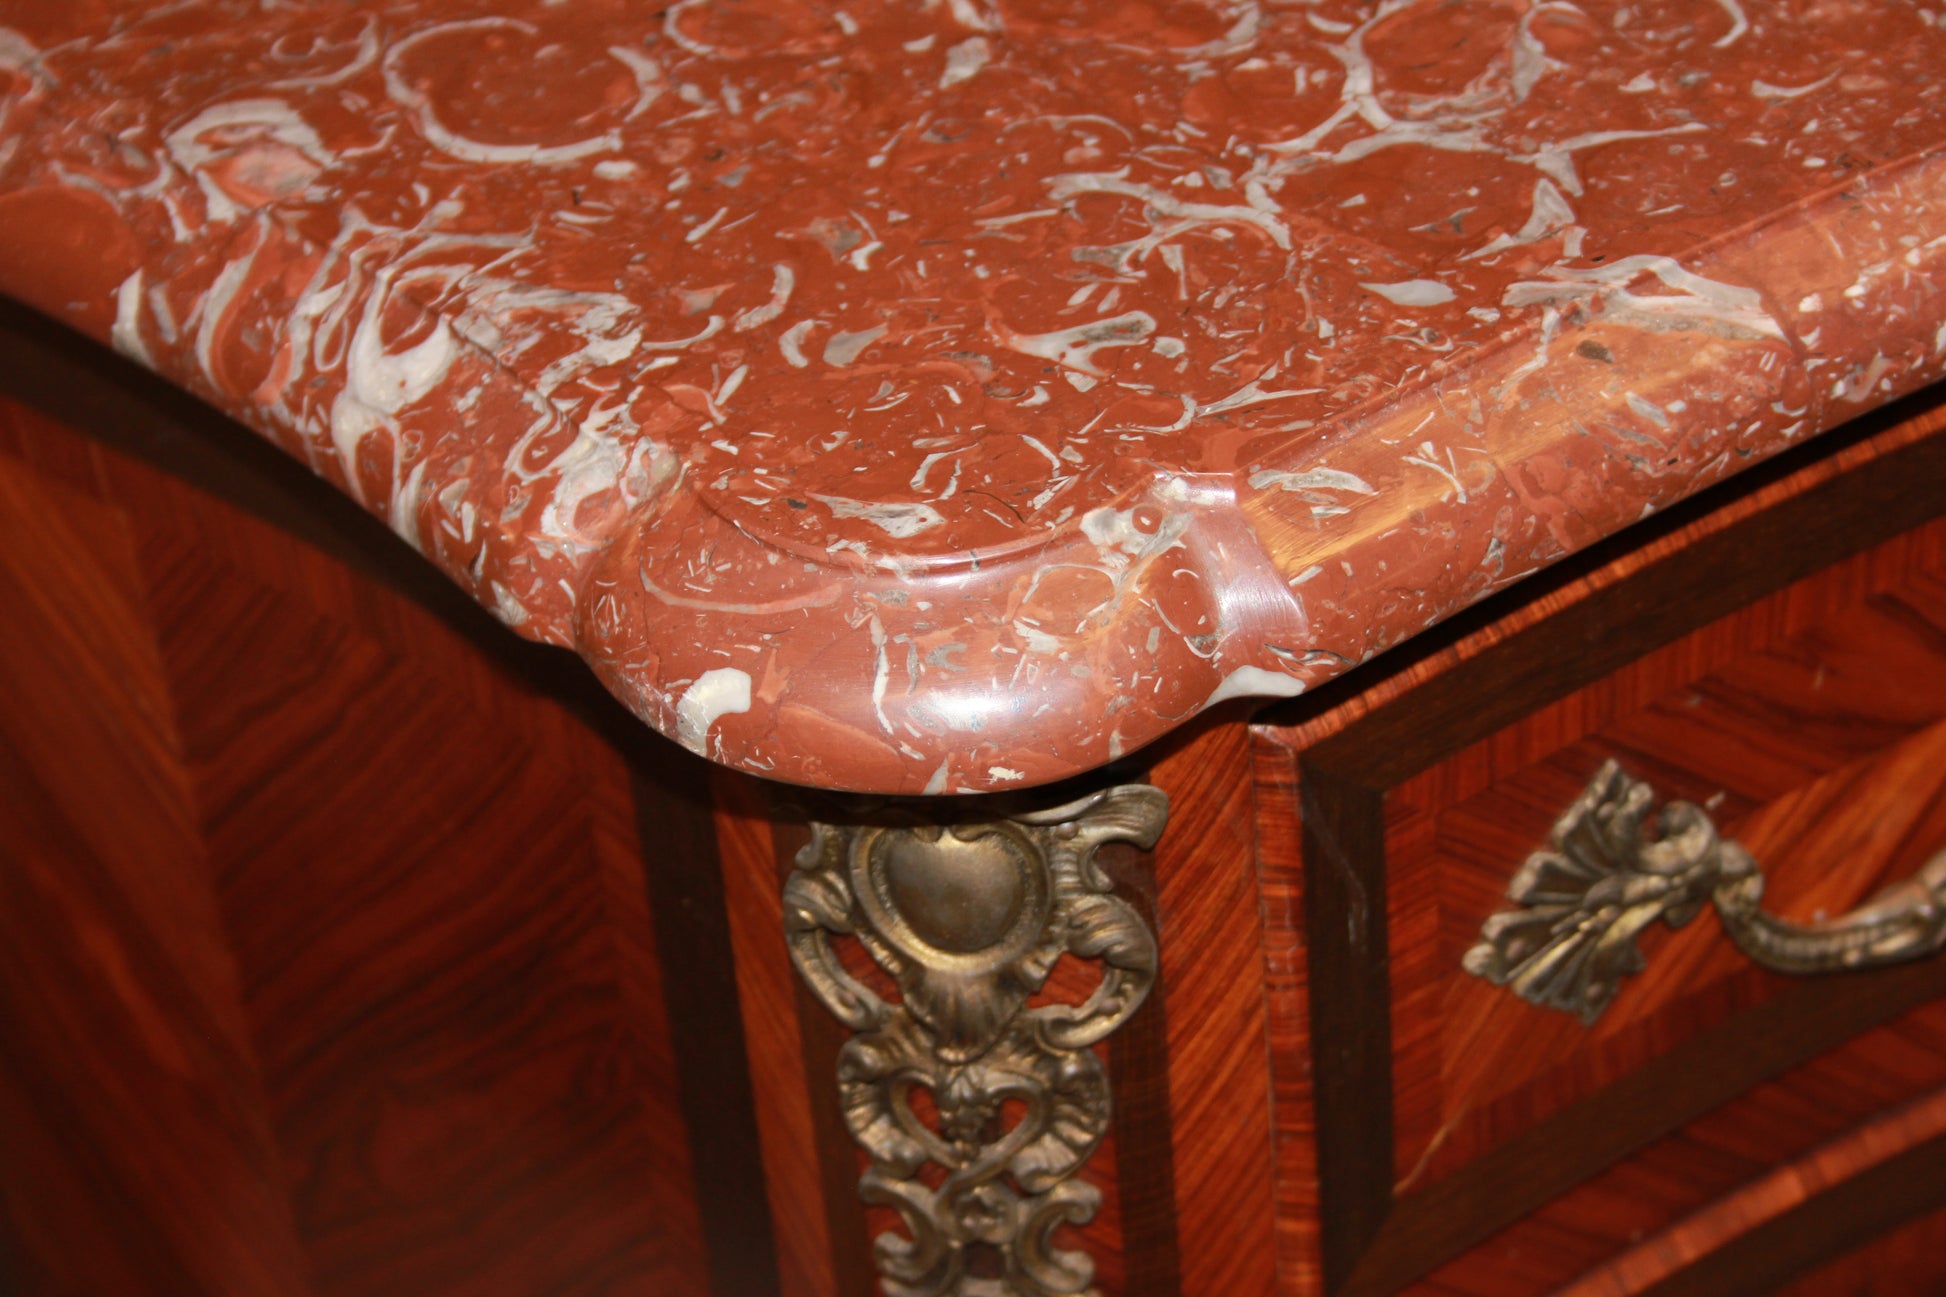 Comoncino stile Transizione della seconda metà del 1800 con marmo rosso Francia e bronzi